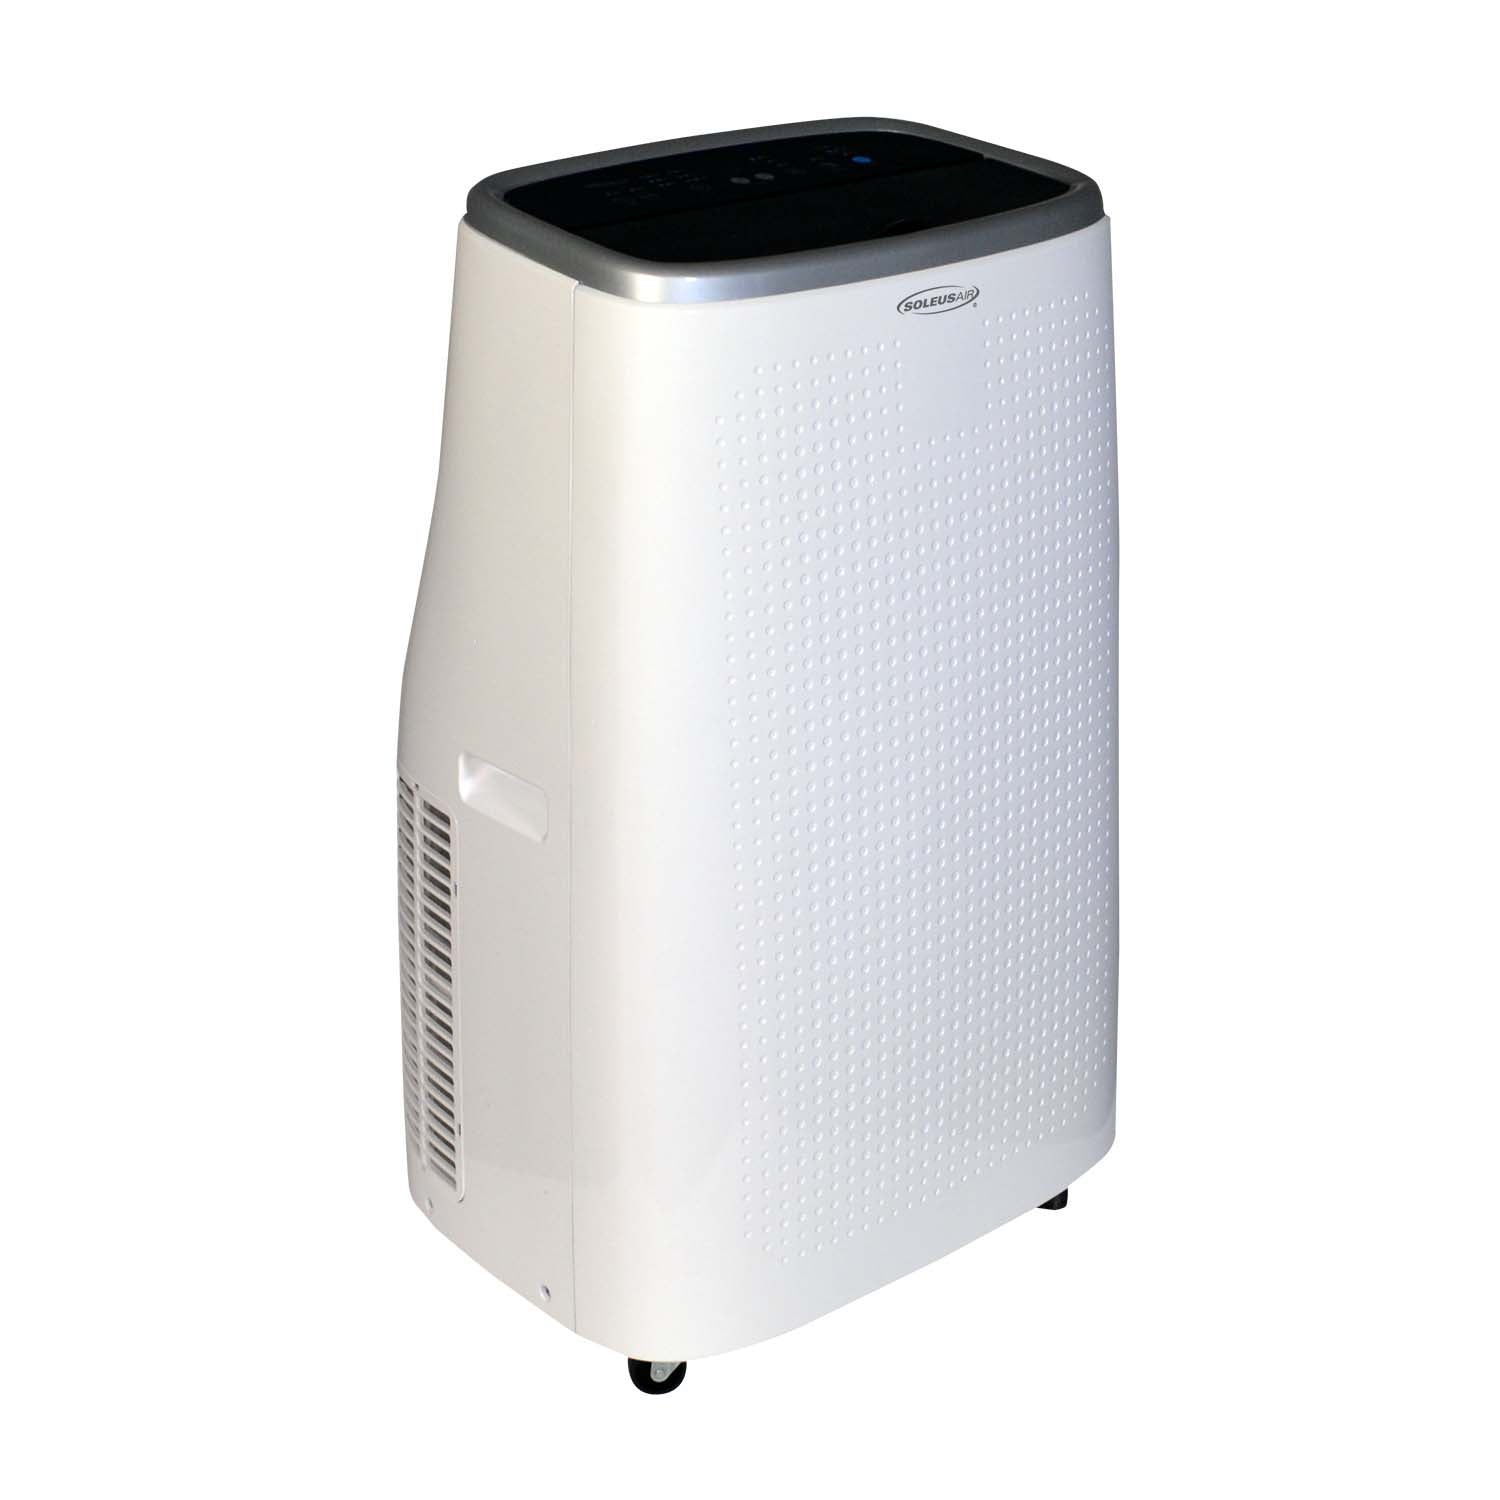 Soleus Air 13,000 BTU/9,000 BTU DOE Portable Air Conditioner